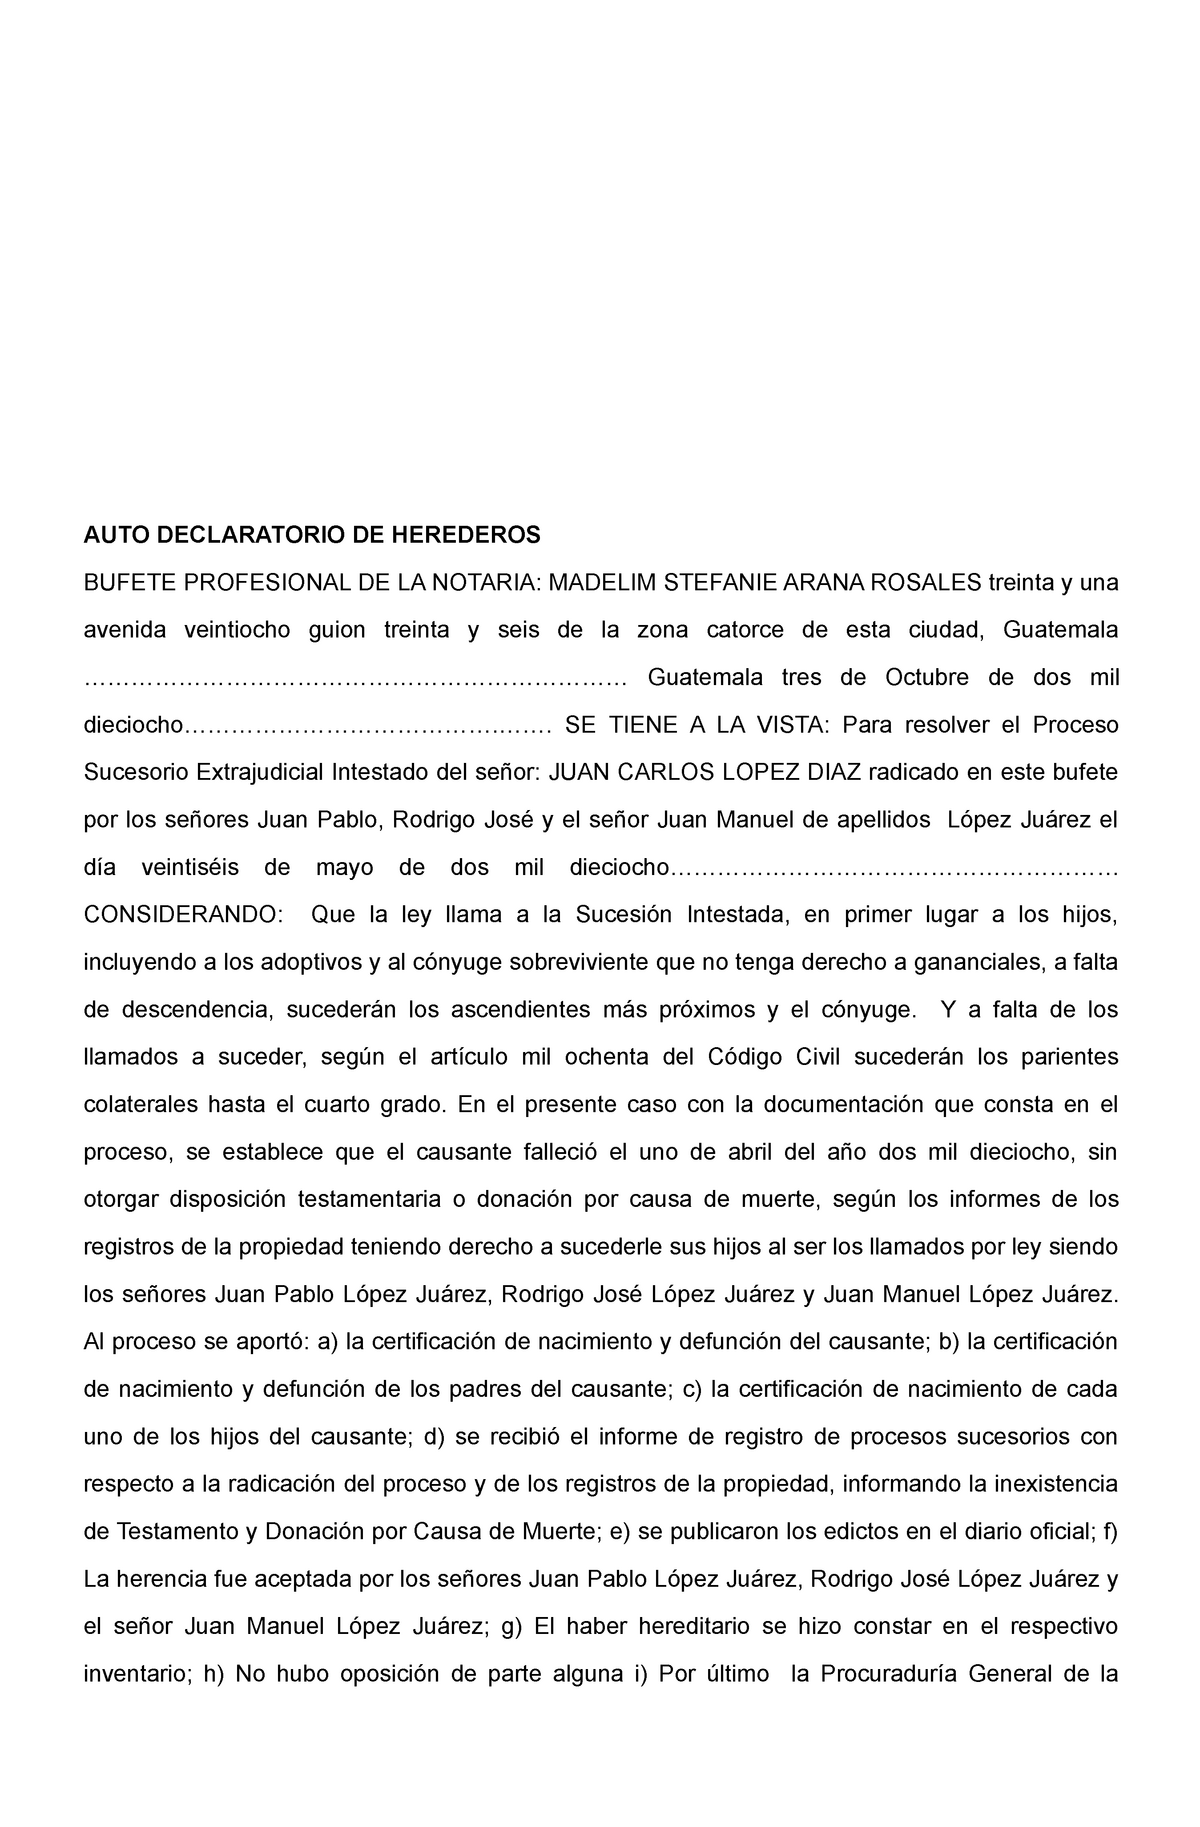 Auto Declaratoria De Herederos Auto Declaratorio De Herederos Bufete Profesional De La Notaria 7405